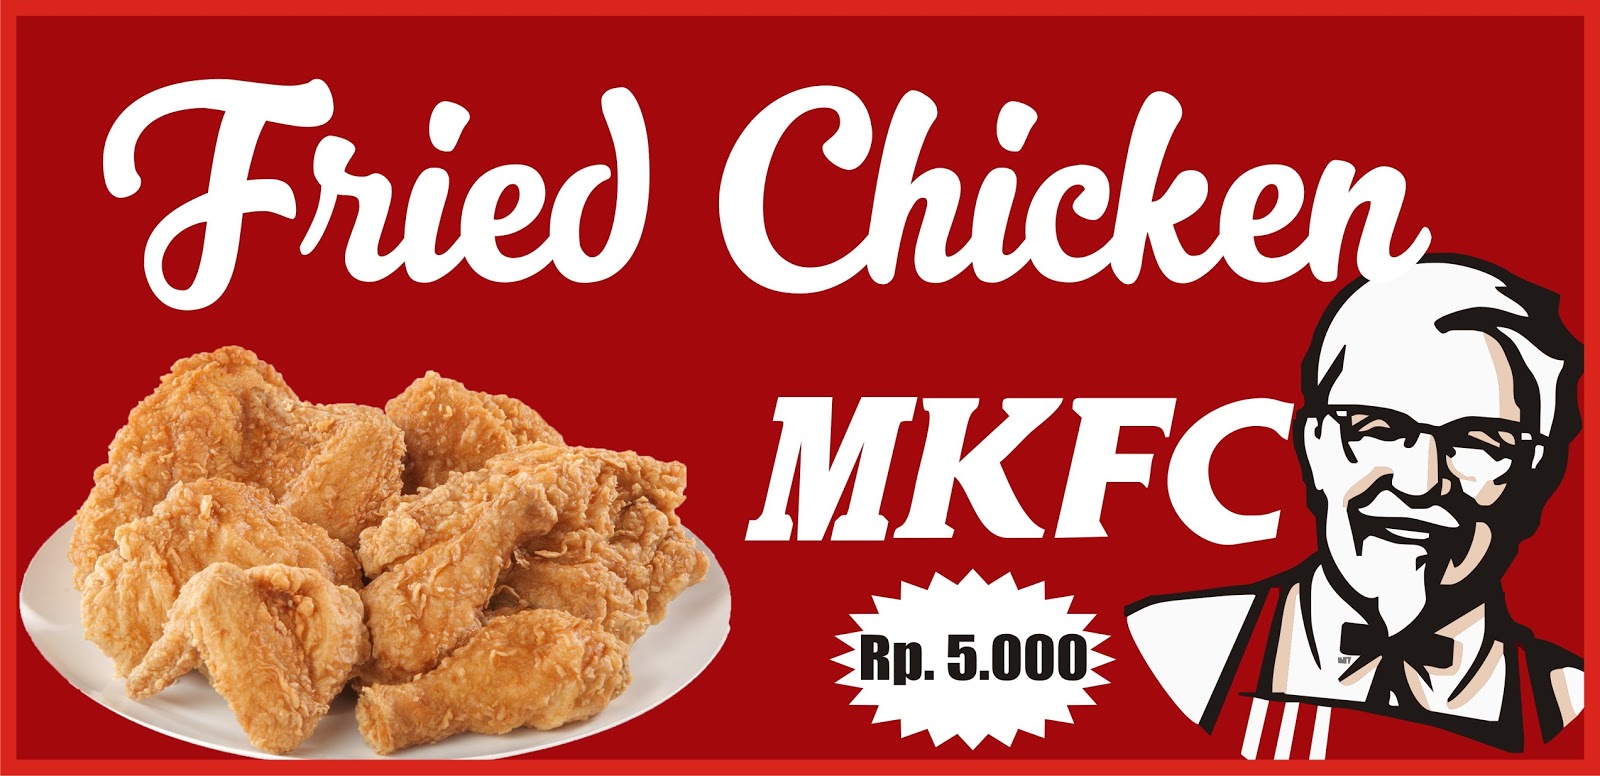 Download Contoh Spanduk Fried Chicken Format CDR | KARYAKU